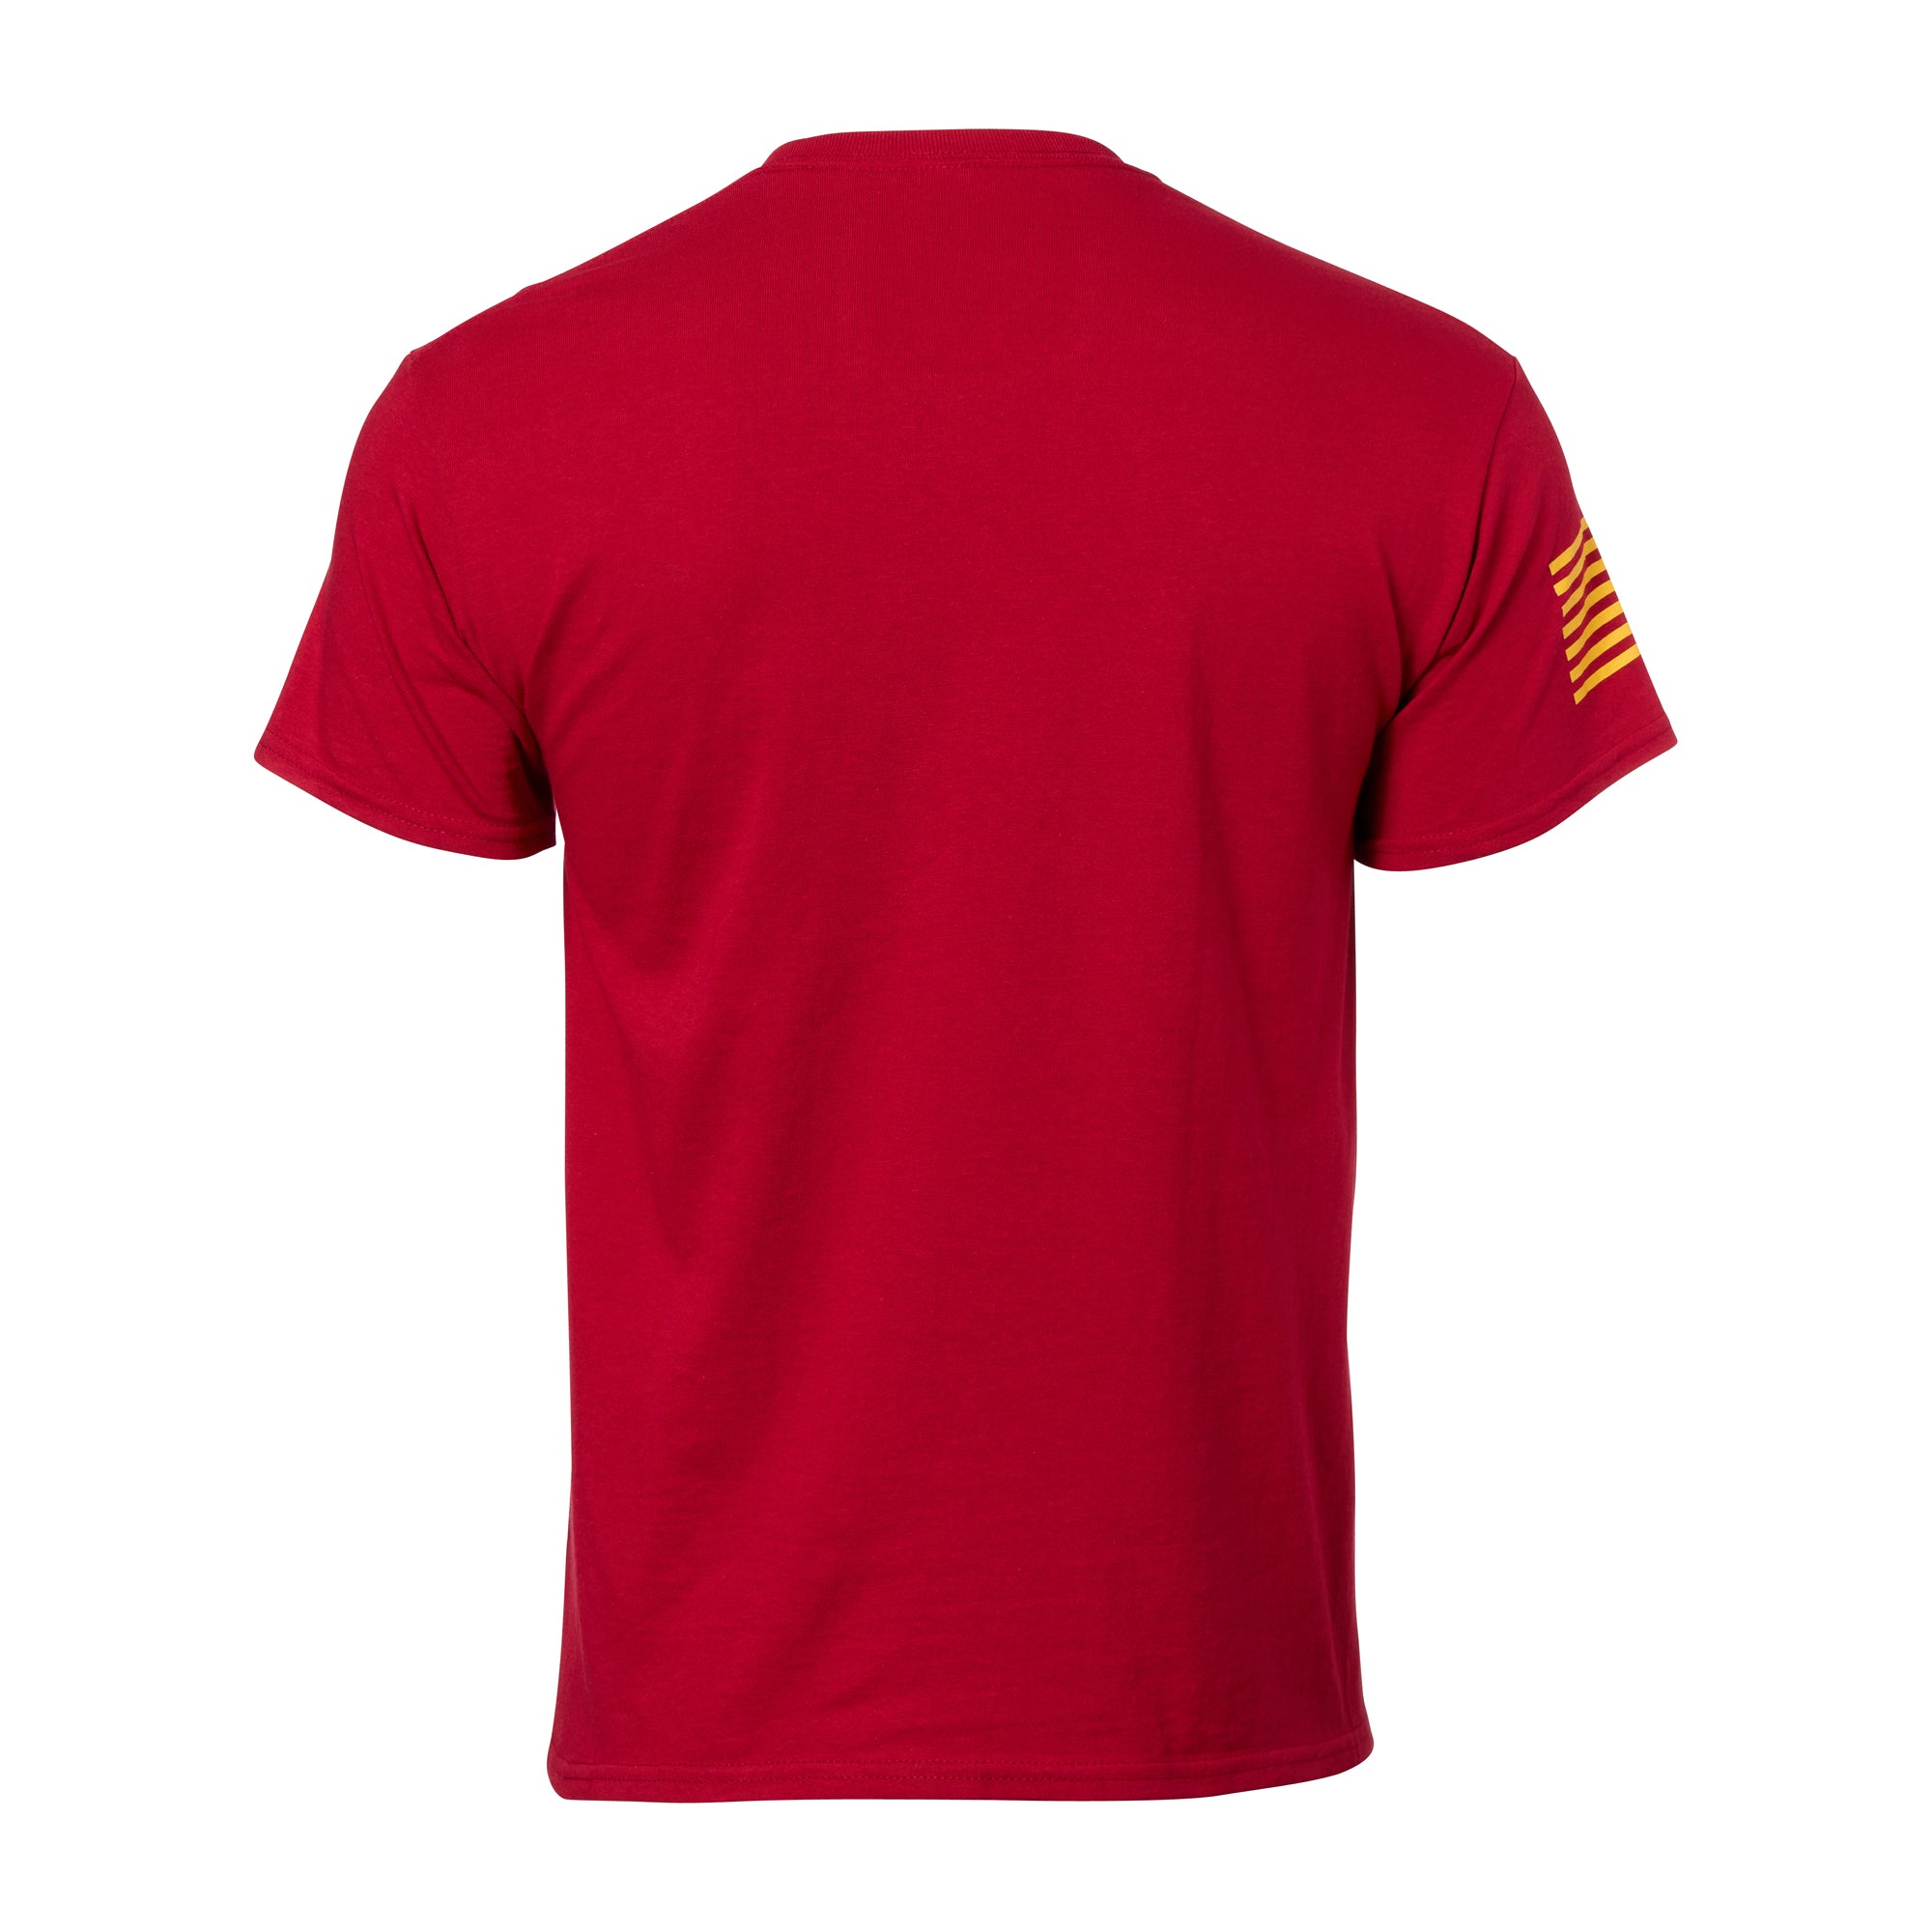 7.62 Design T-Shirt USMC Arched Semper Fi scarlet